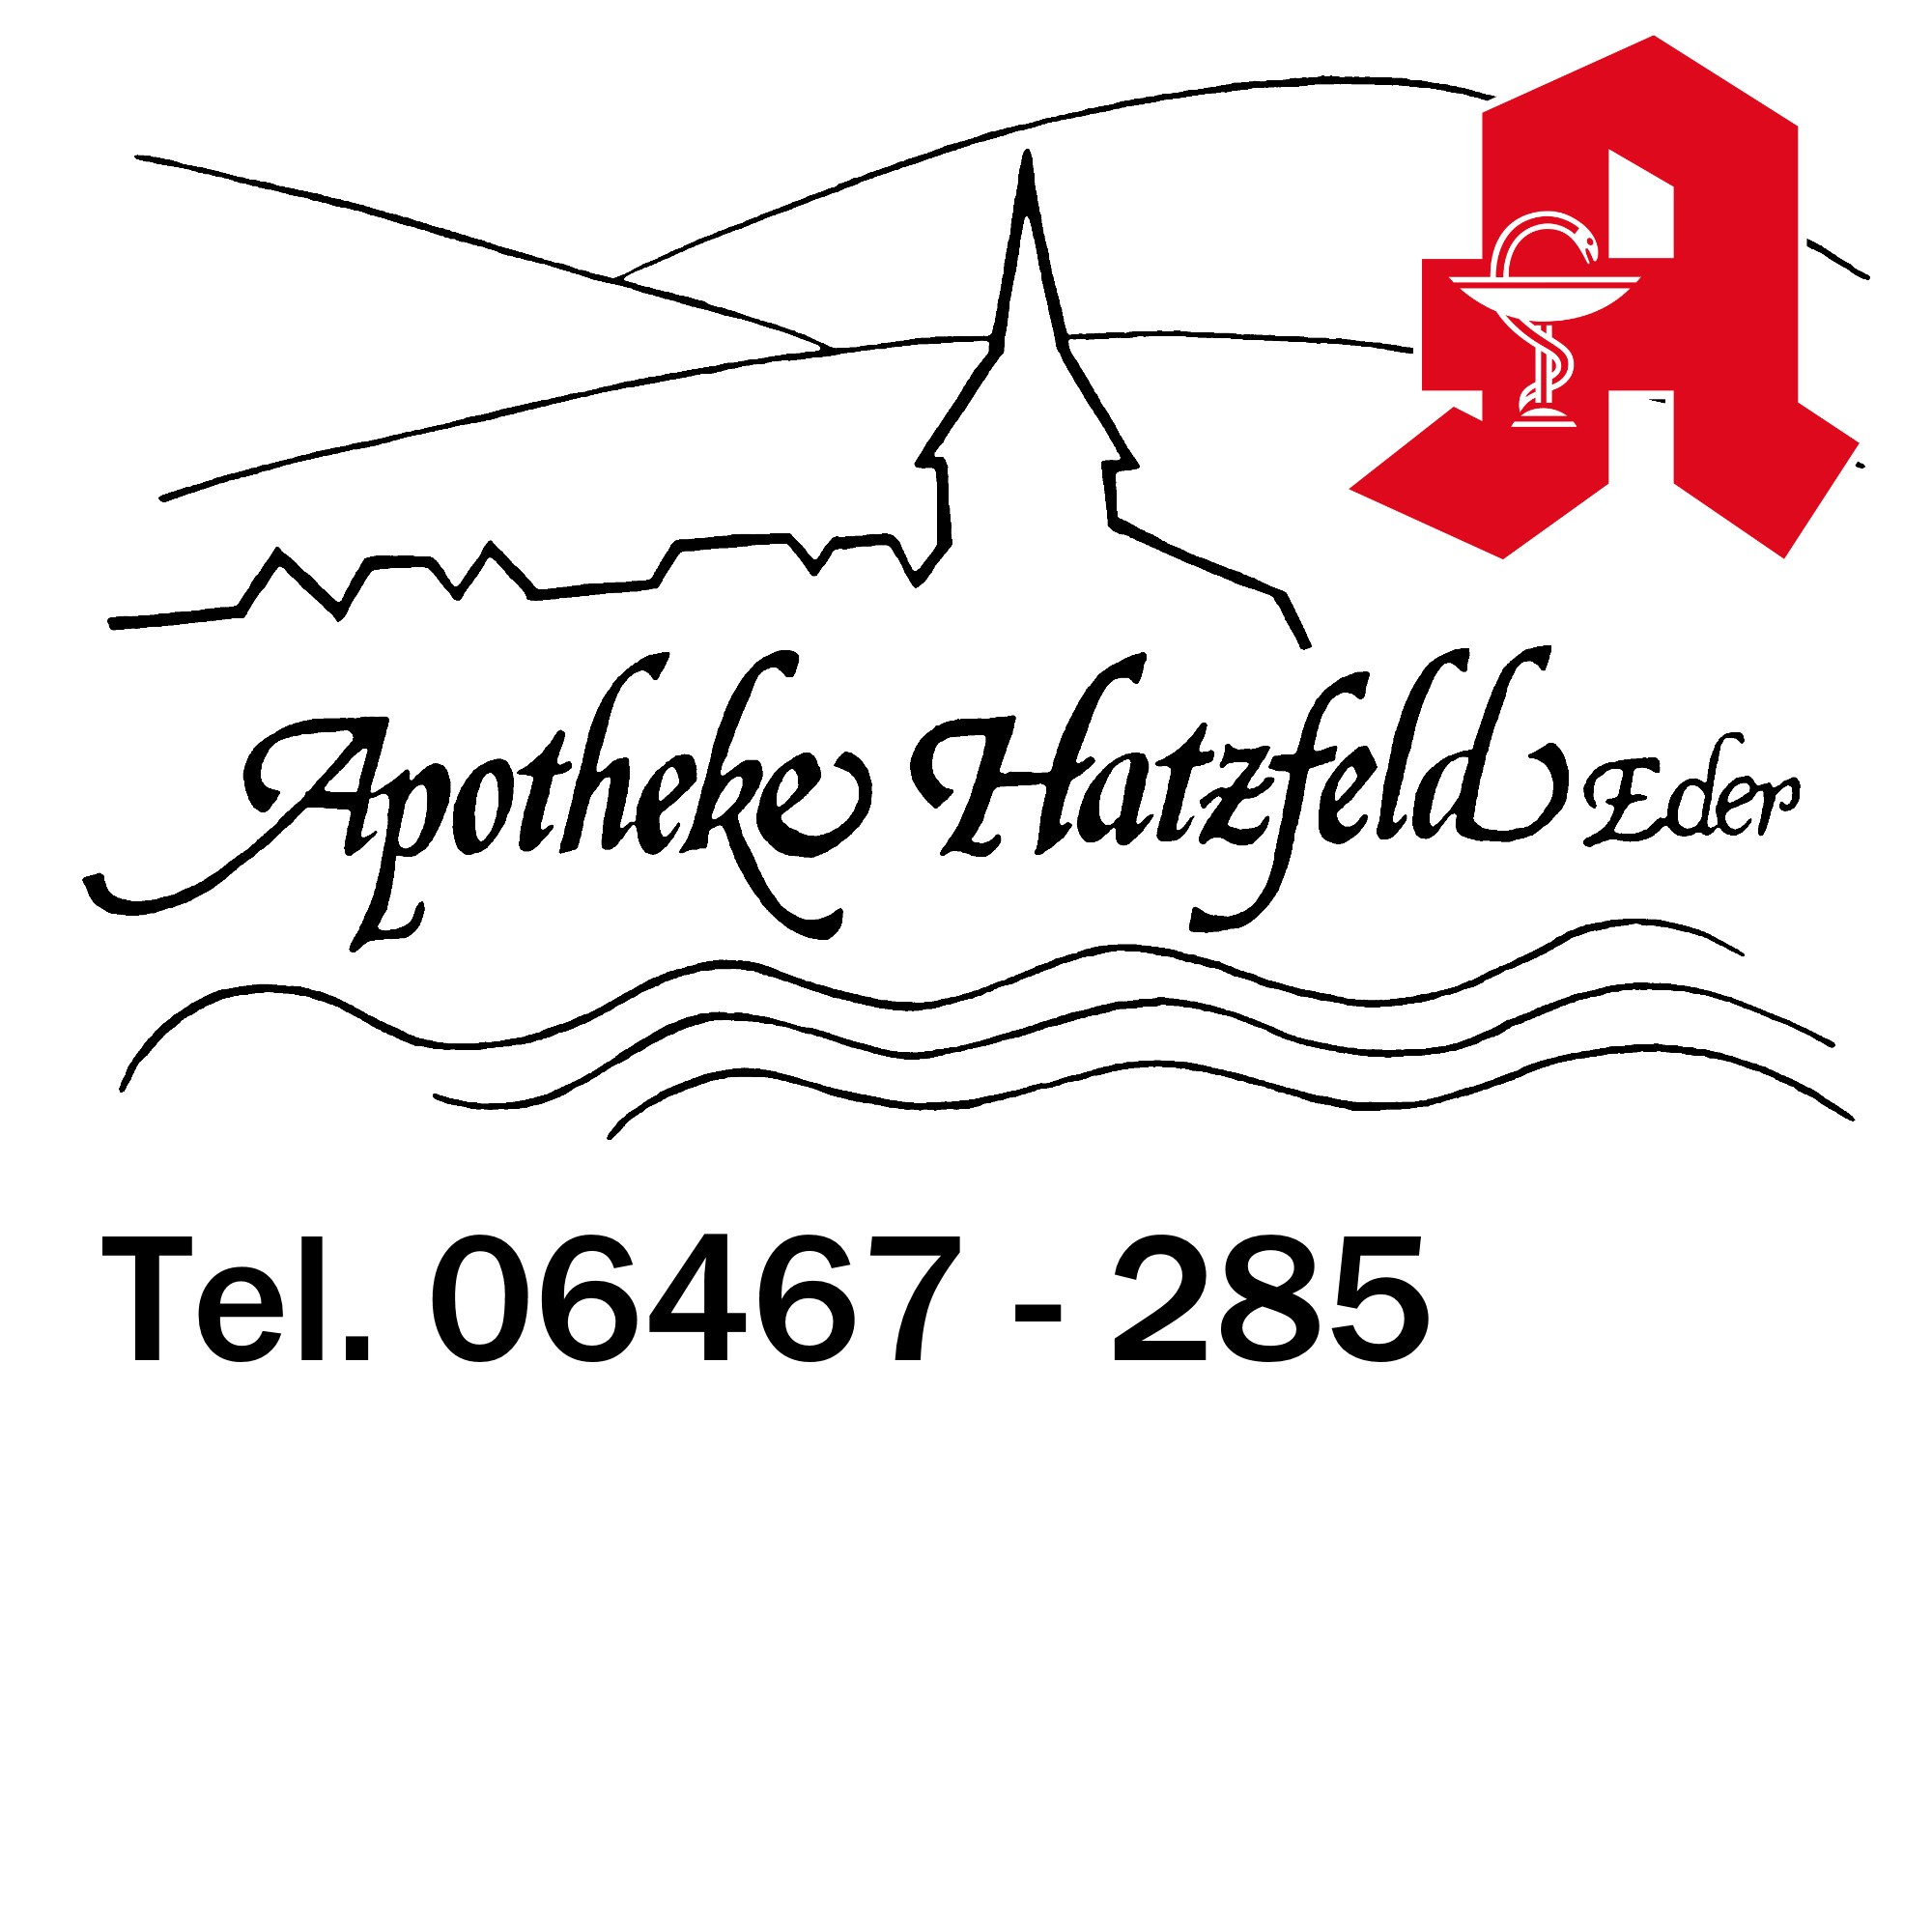 Apotheke Hatzfeld in Hatzfeld an der Eder - Logo